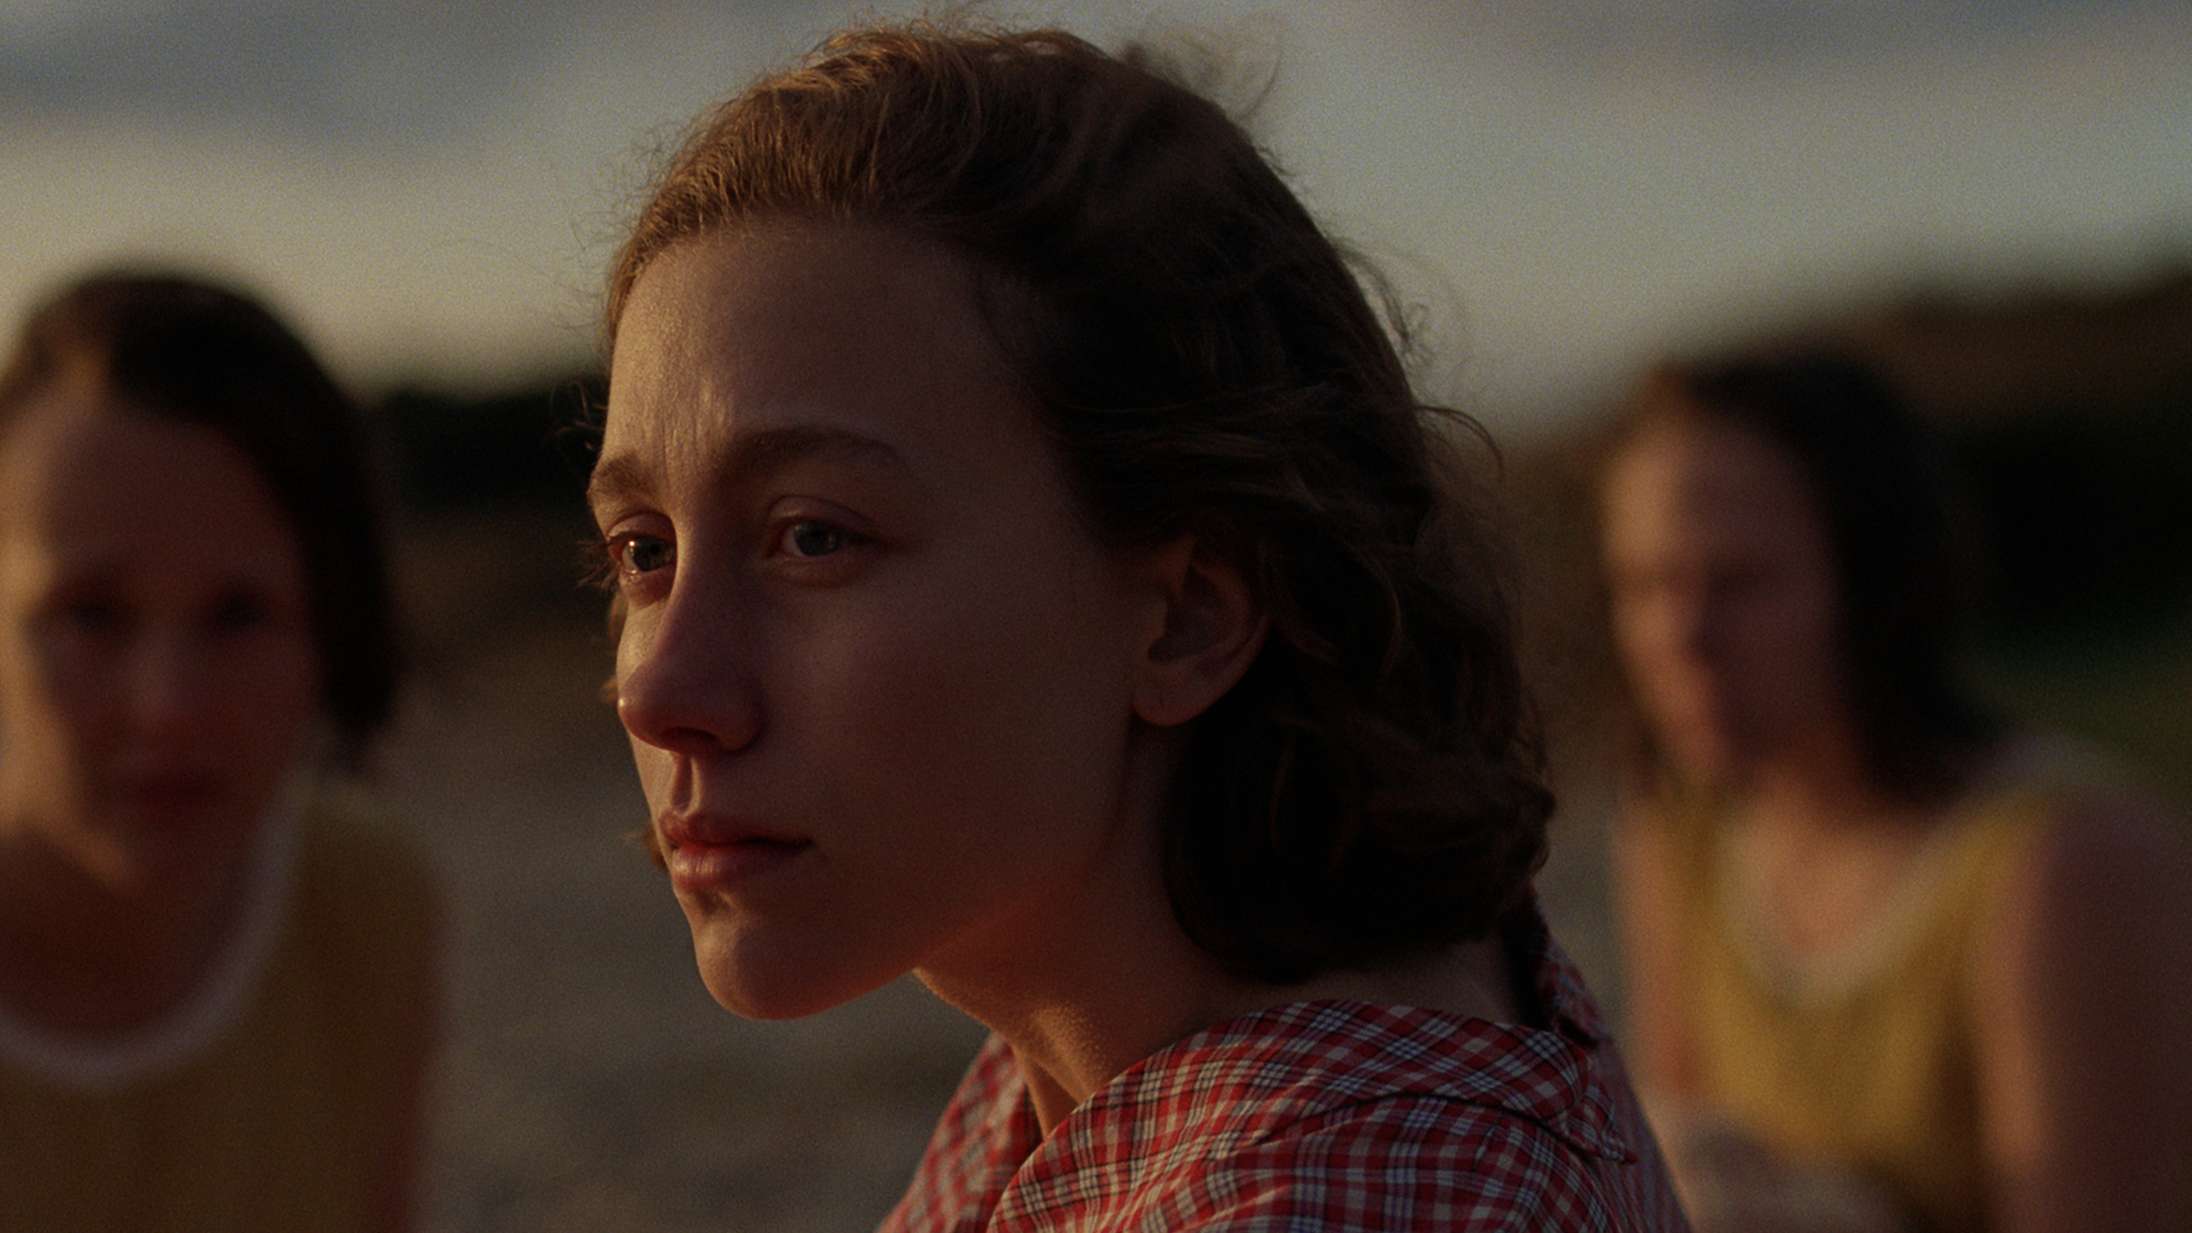 ’Ustyrlig’: Malou Reymanns nye film fik mig til at græde, til jeg blev flov over det